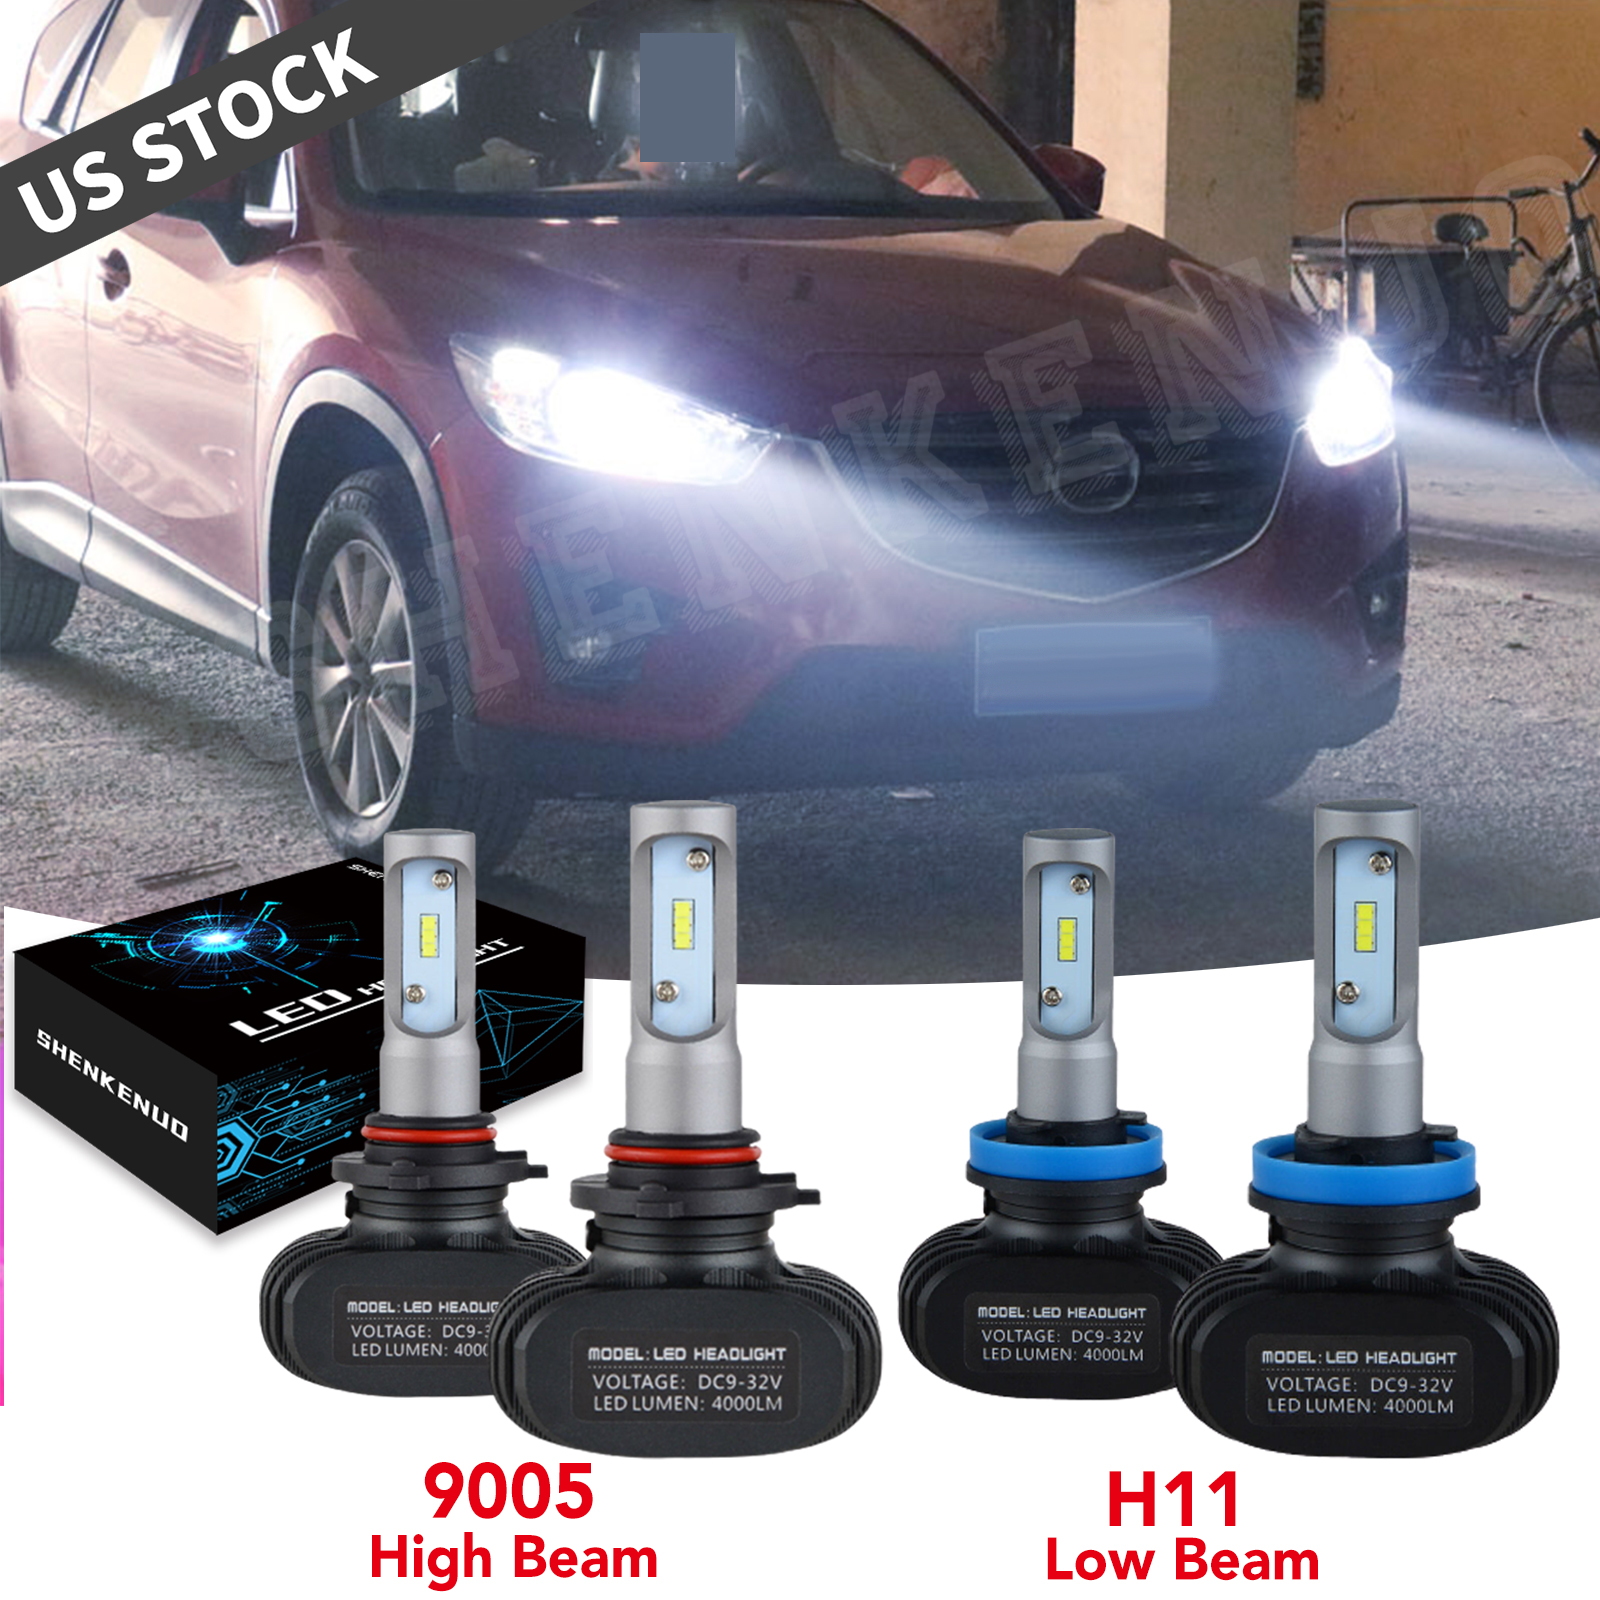 LED Headlights Kit High Low Beam 6000K Bulb For Mazda 6 2014-2017 CX-5 2013-2016 | eBay 2016 Mazda Cx-5 Led Headlight Bulb Replacement